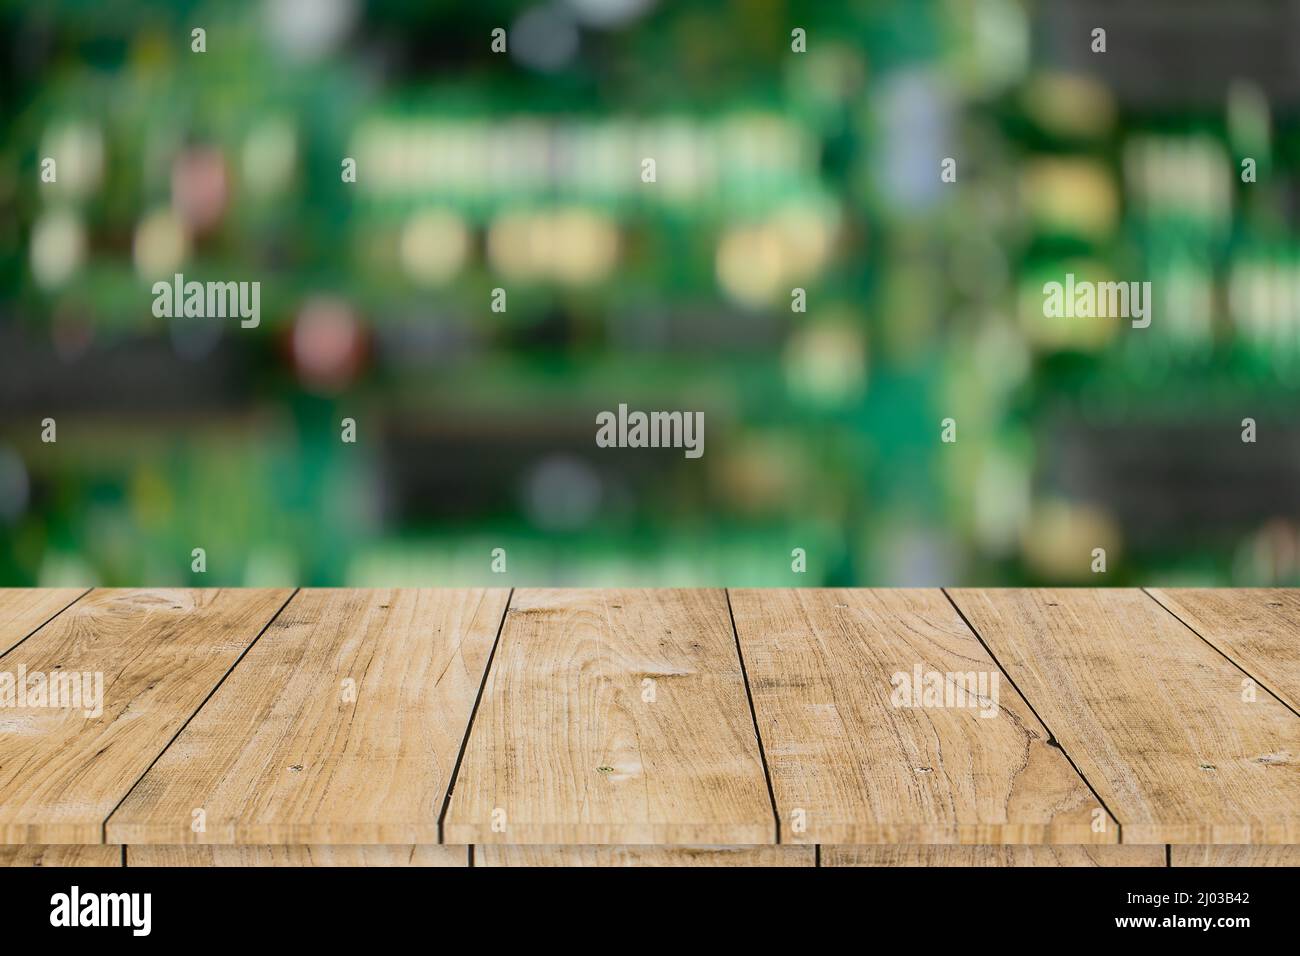 blur scheda elettronica a circuito stampato con spazio da tavolo in legno per montaggio prodotti sfondo pubblicitario. Foto Stock